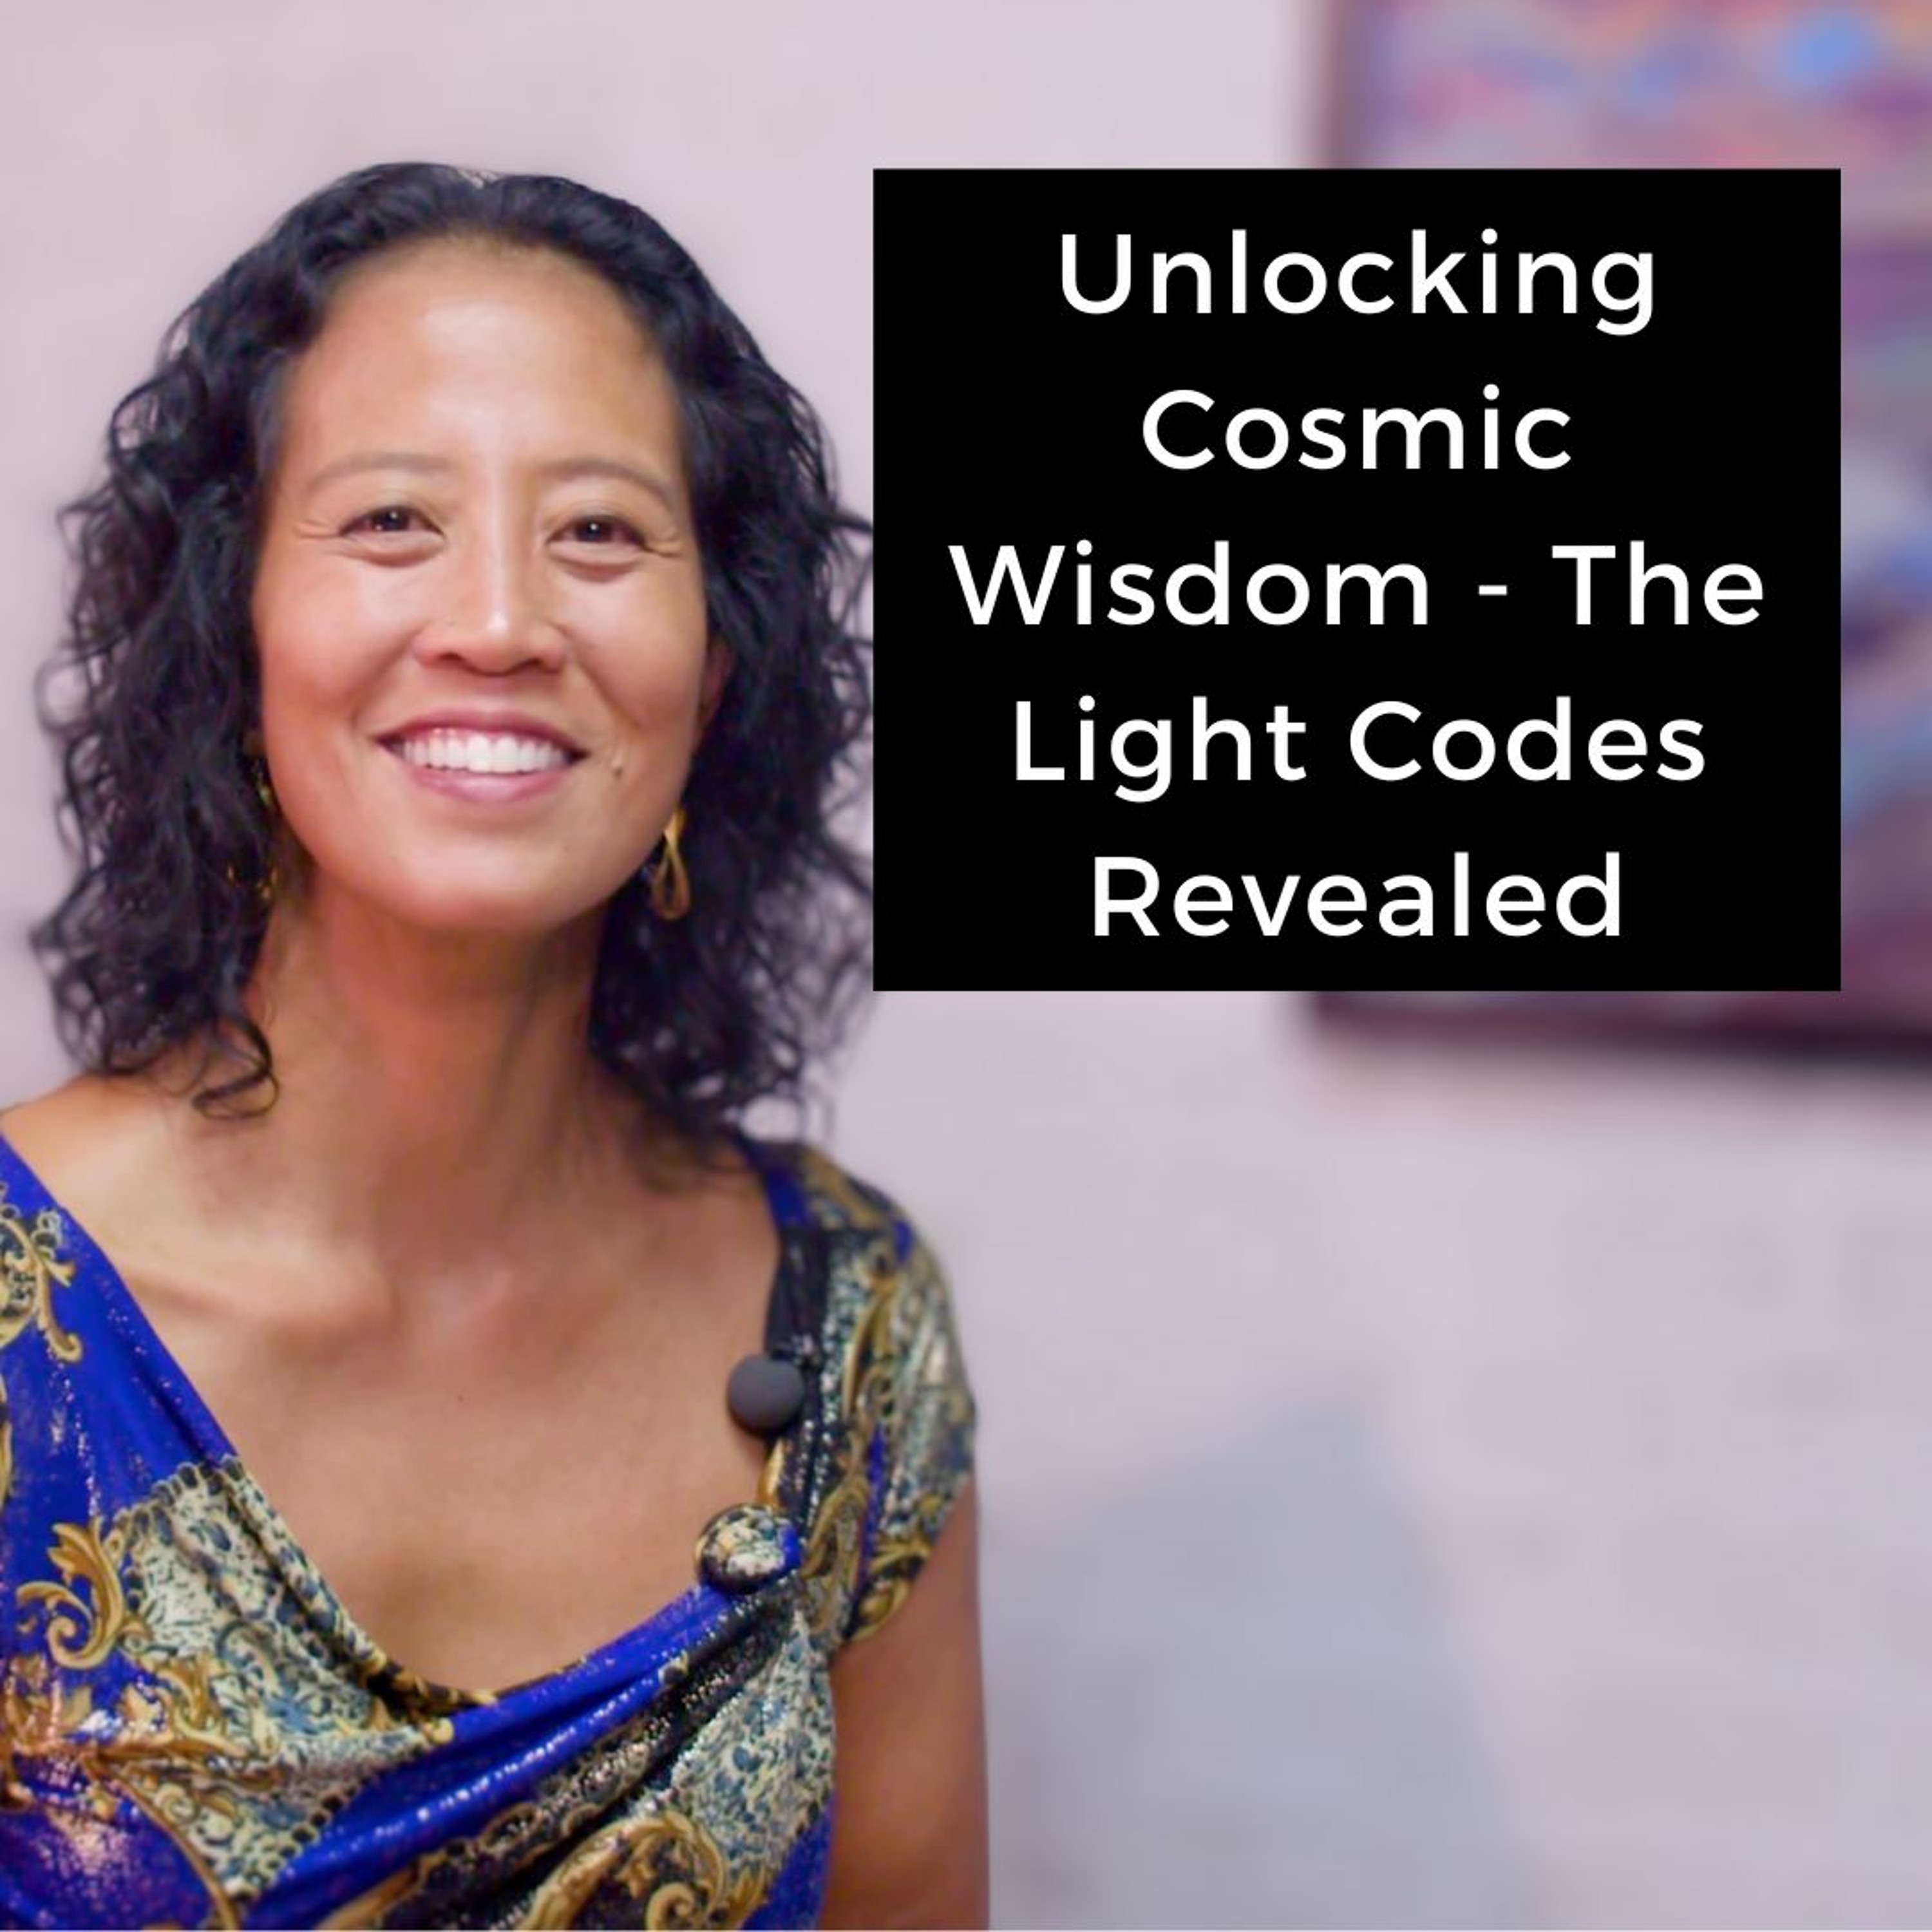 Episode 204 - Unlocking Cosmic Wisdom: The Light Codes Revealed